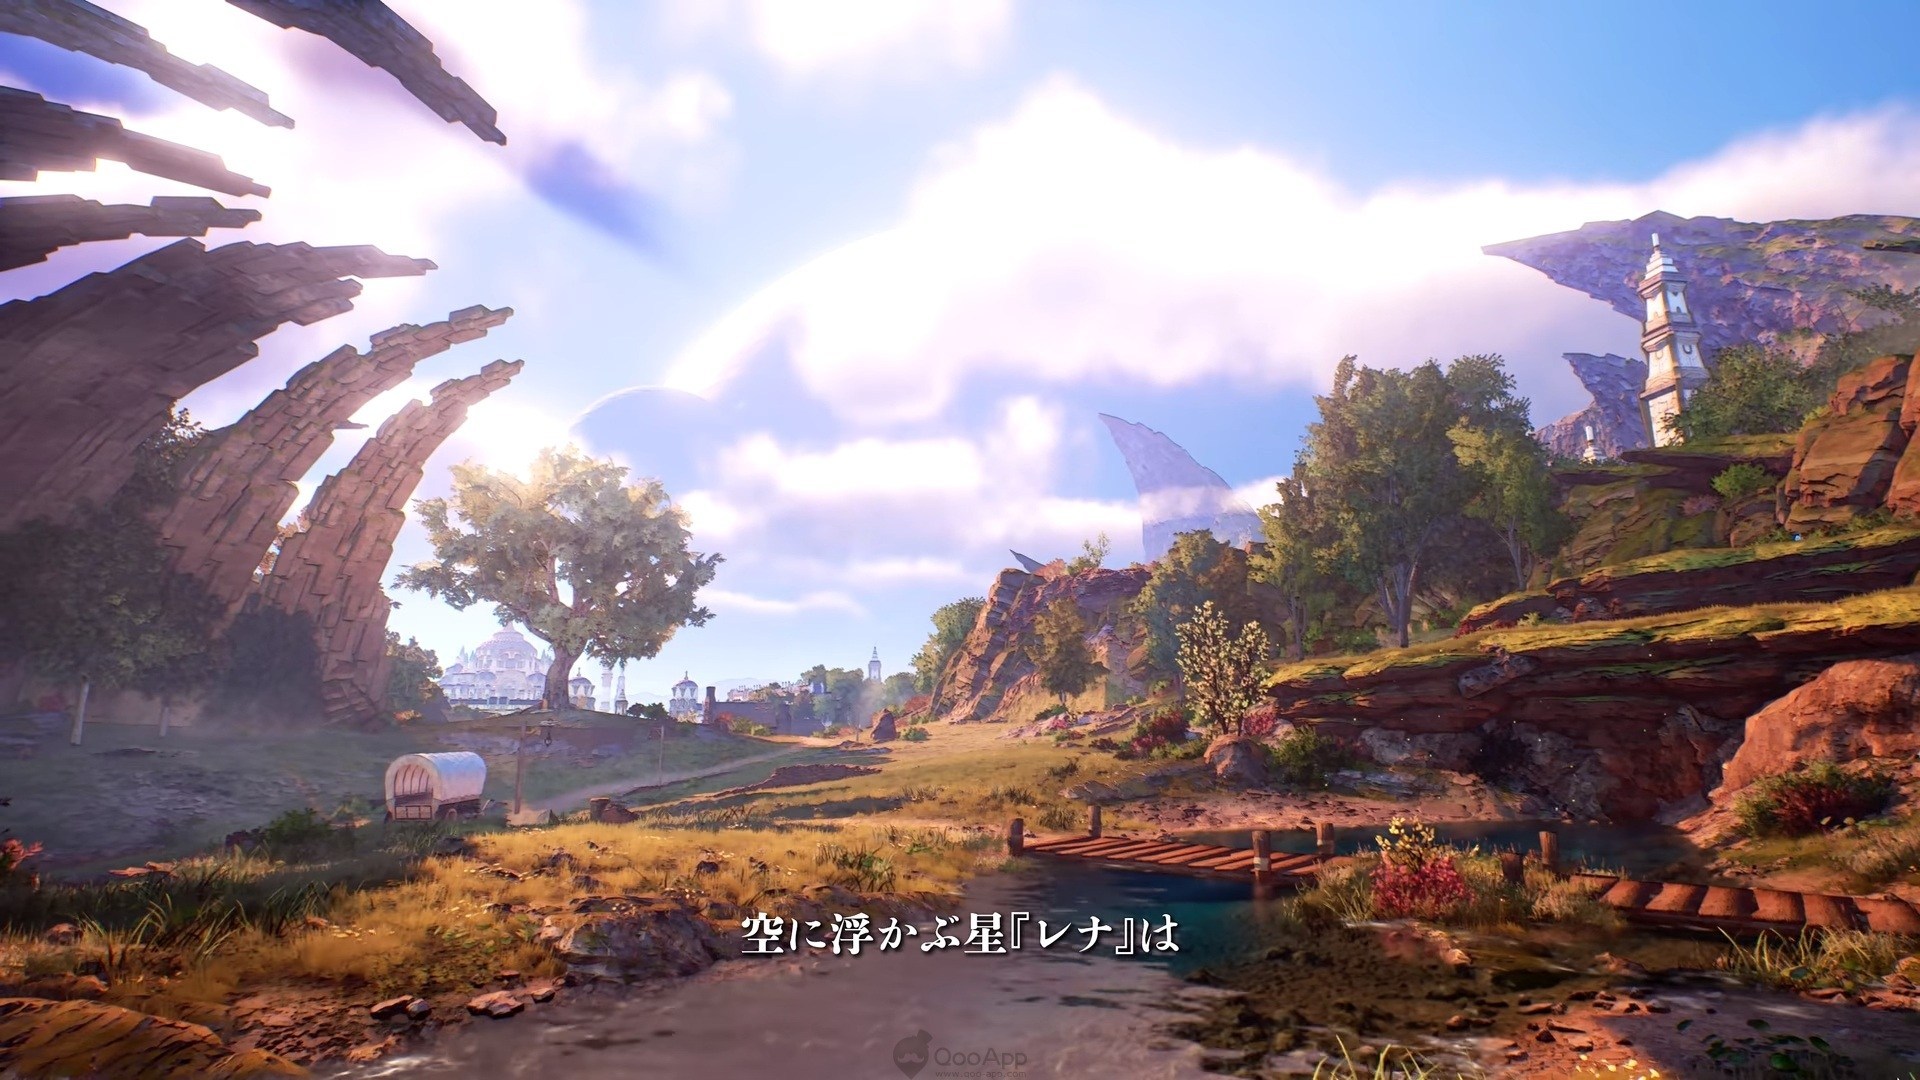 《破晓传说》画面震撼游戏细节多 采用半开放世界设计